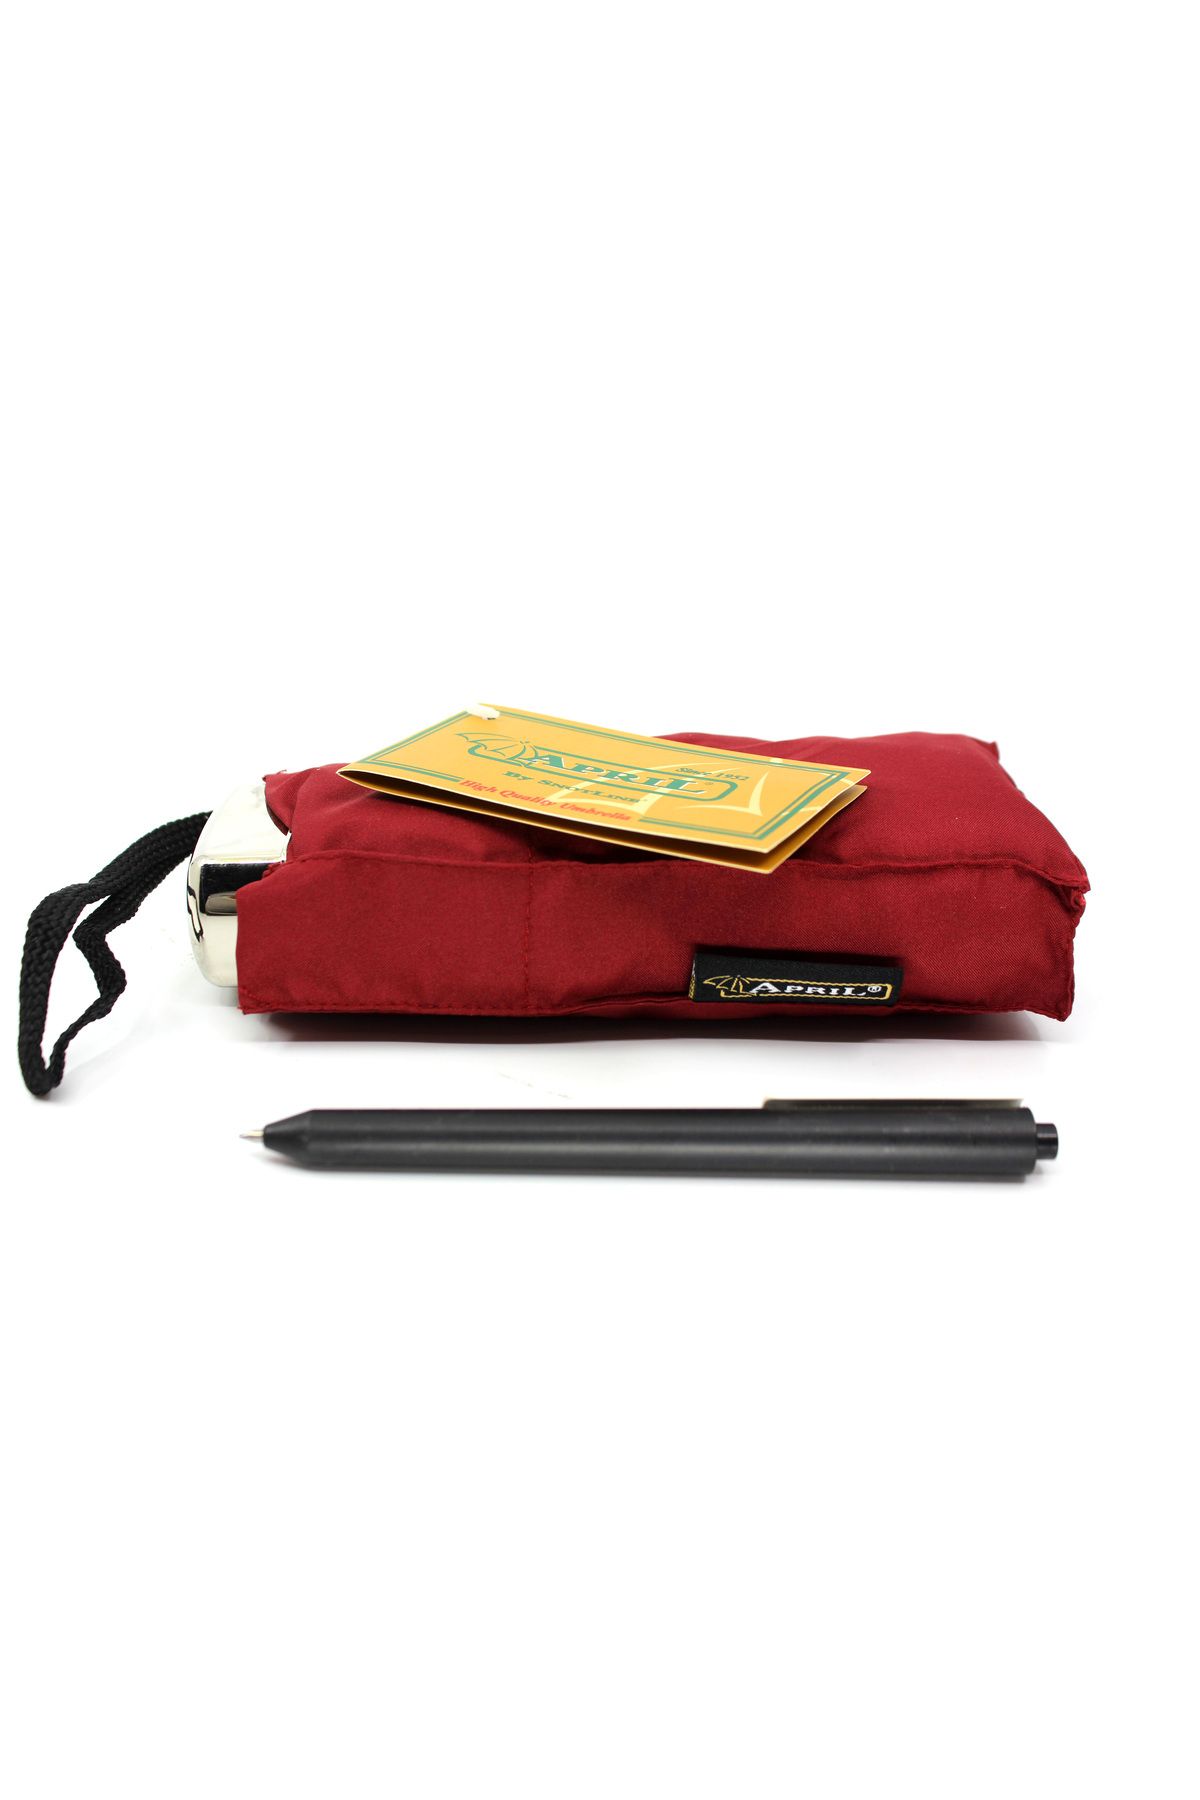 Çanta Sepetim Snotline Ultra Mini Cep Erkek Şemsiye Kapalı Boyut 18 Cm